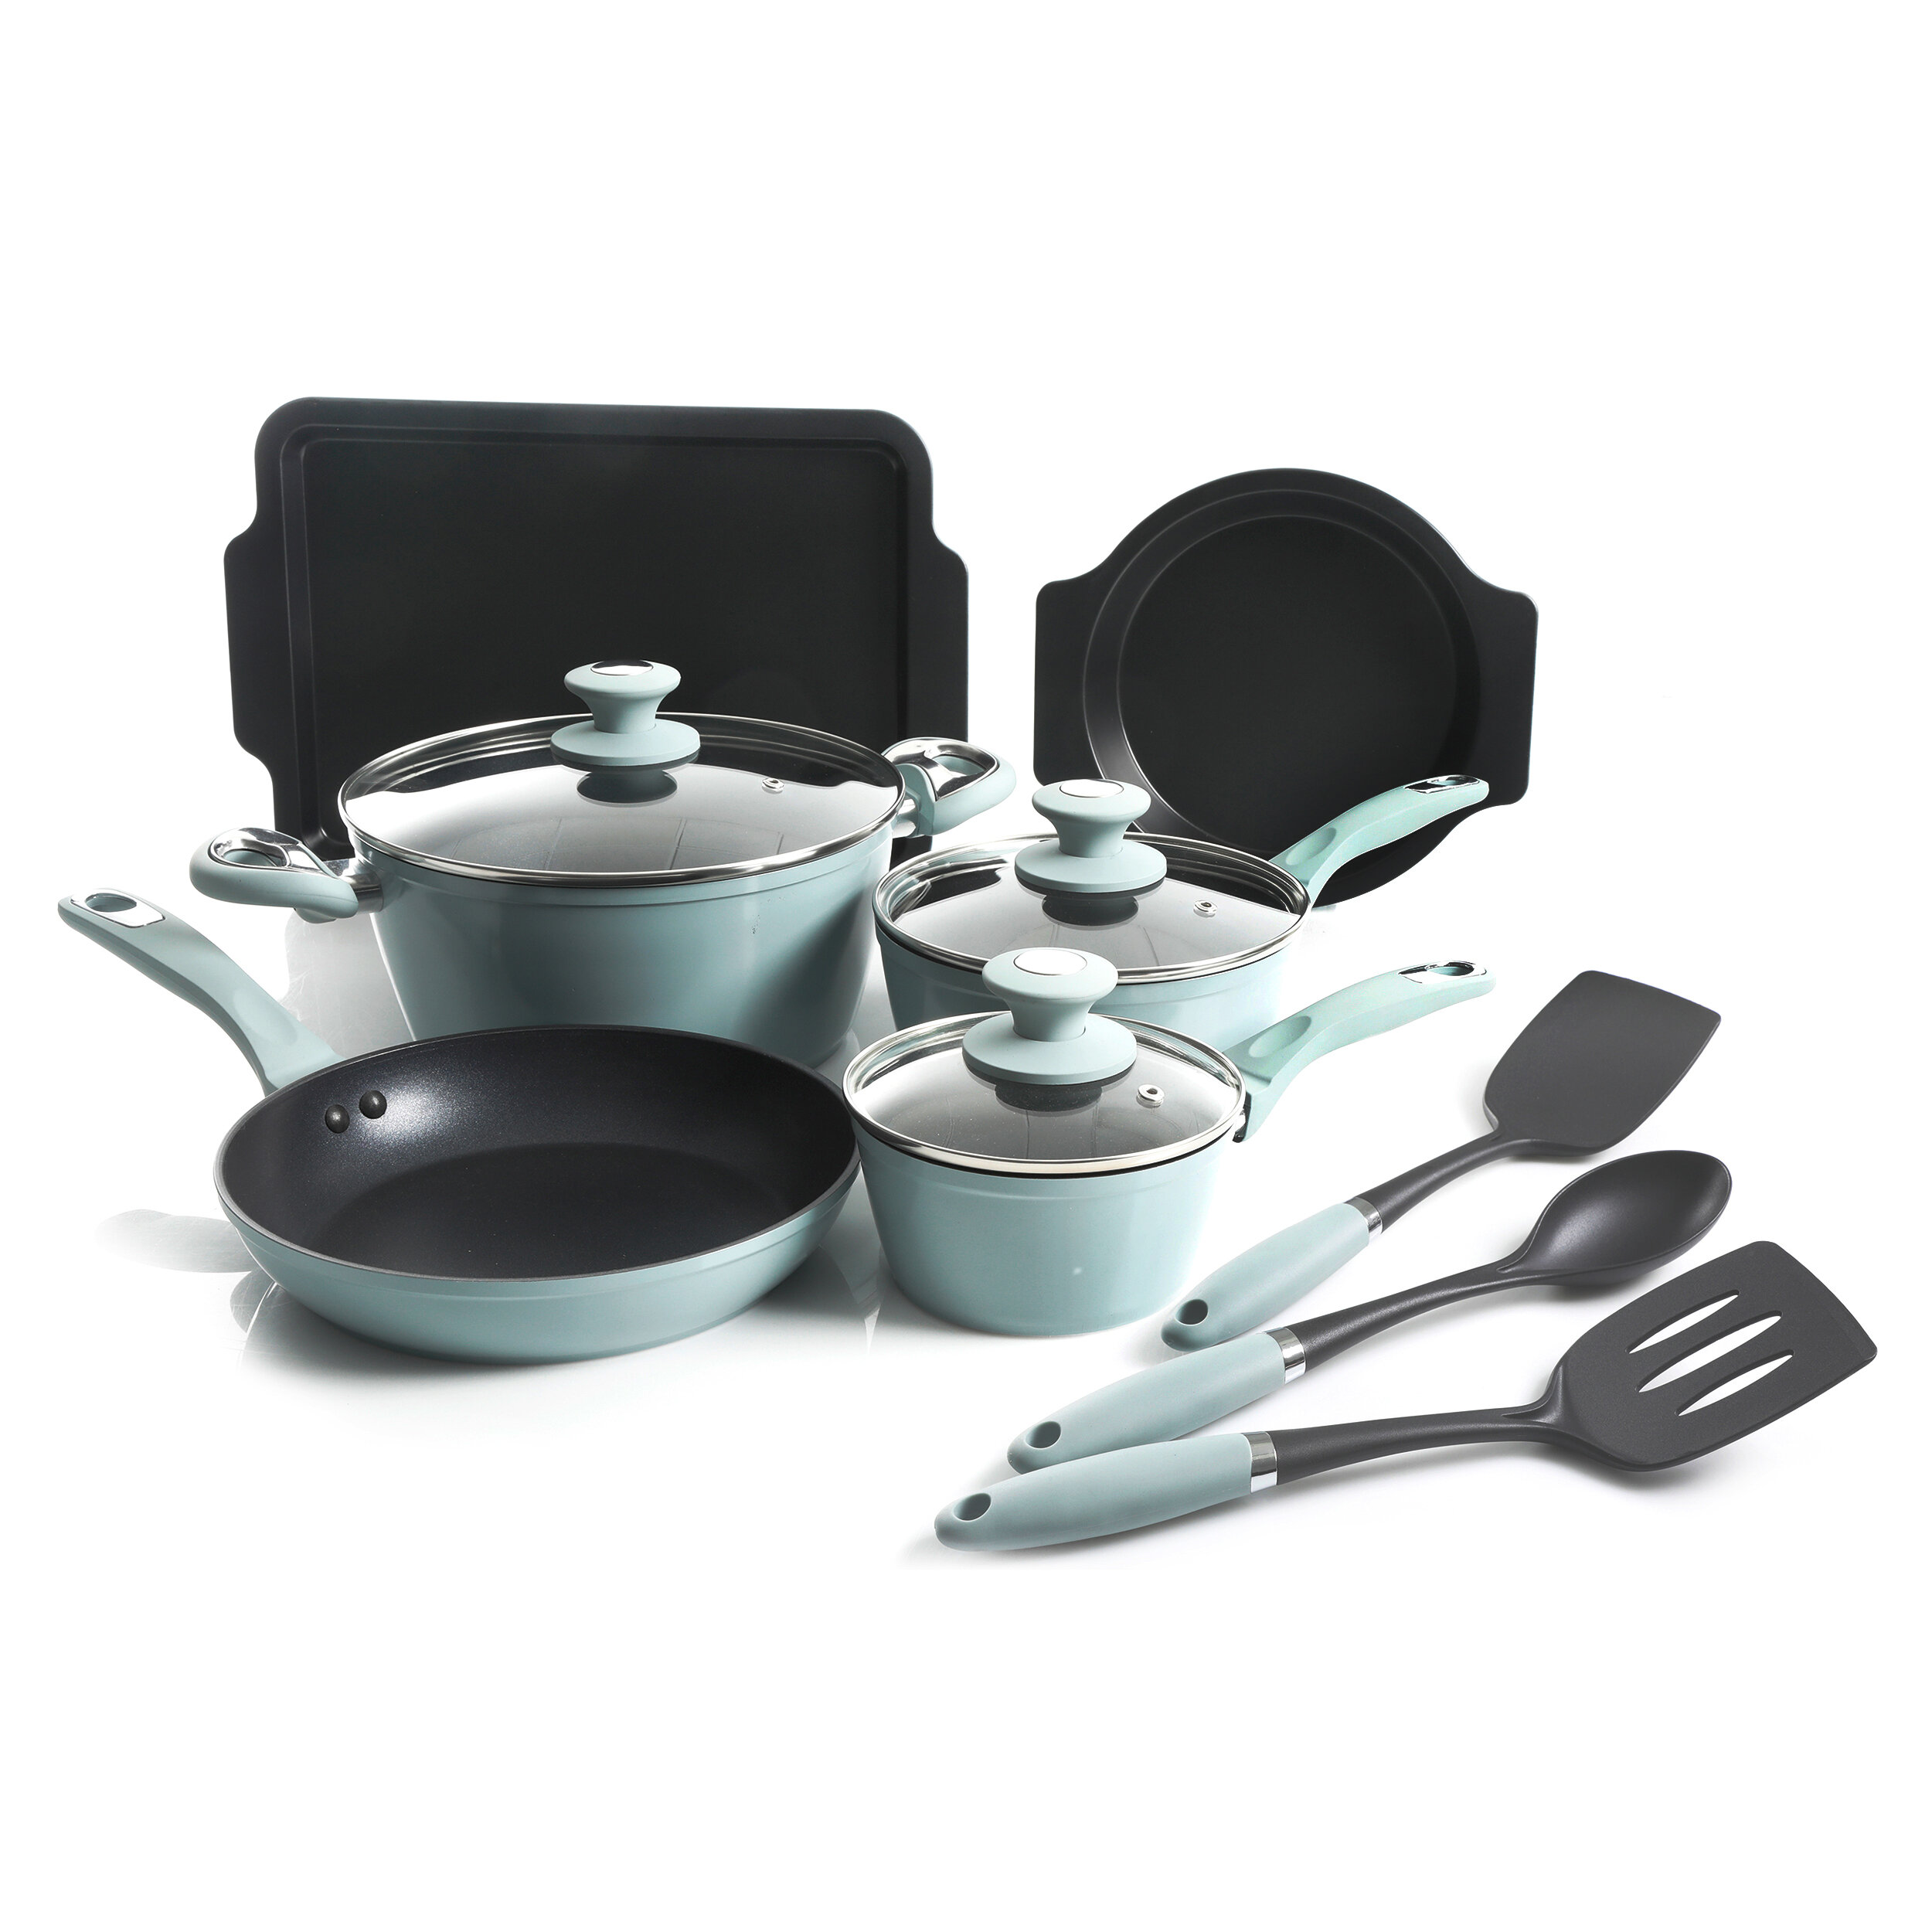 https://assets.wfcdn.com/im/71720932/compr-r85/1266/126691313/oster-12-pieces-aluminum-non-stick-cookware-set.jpg